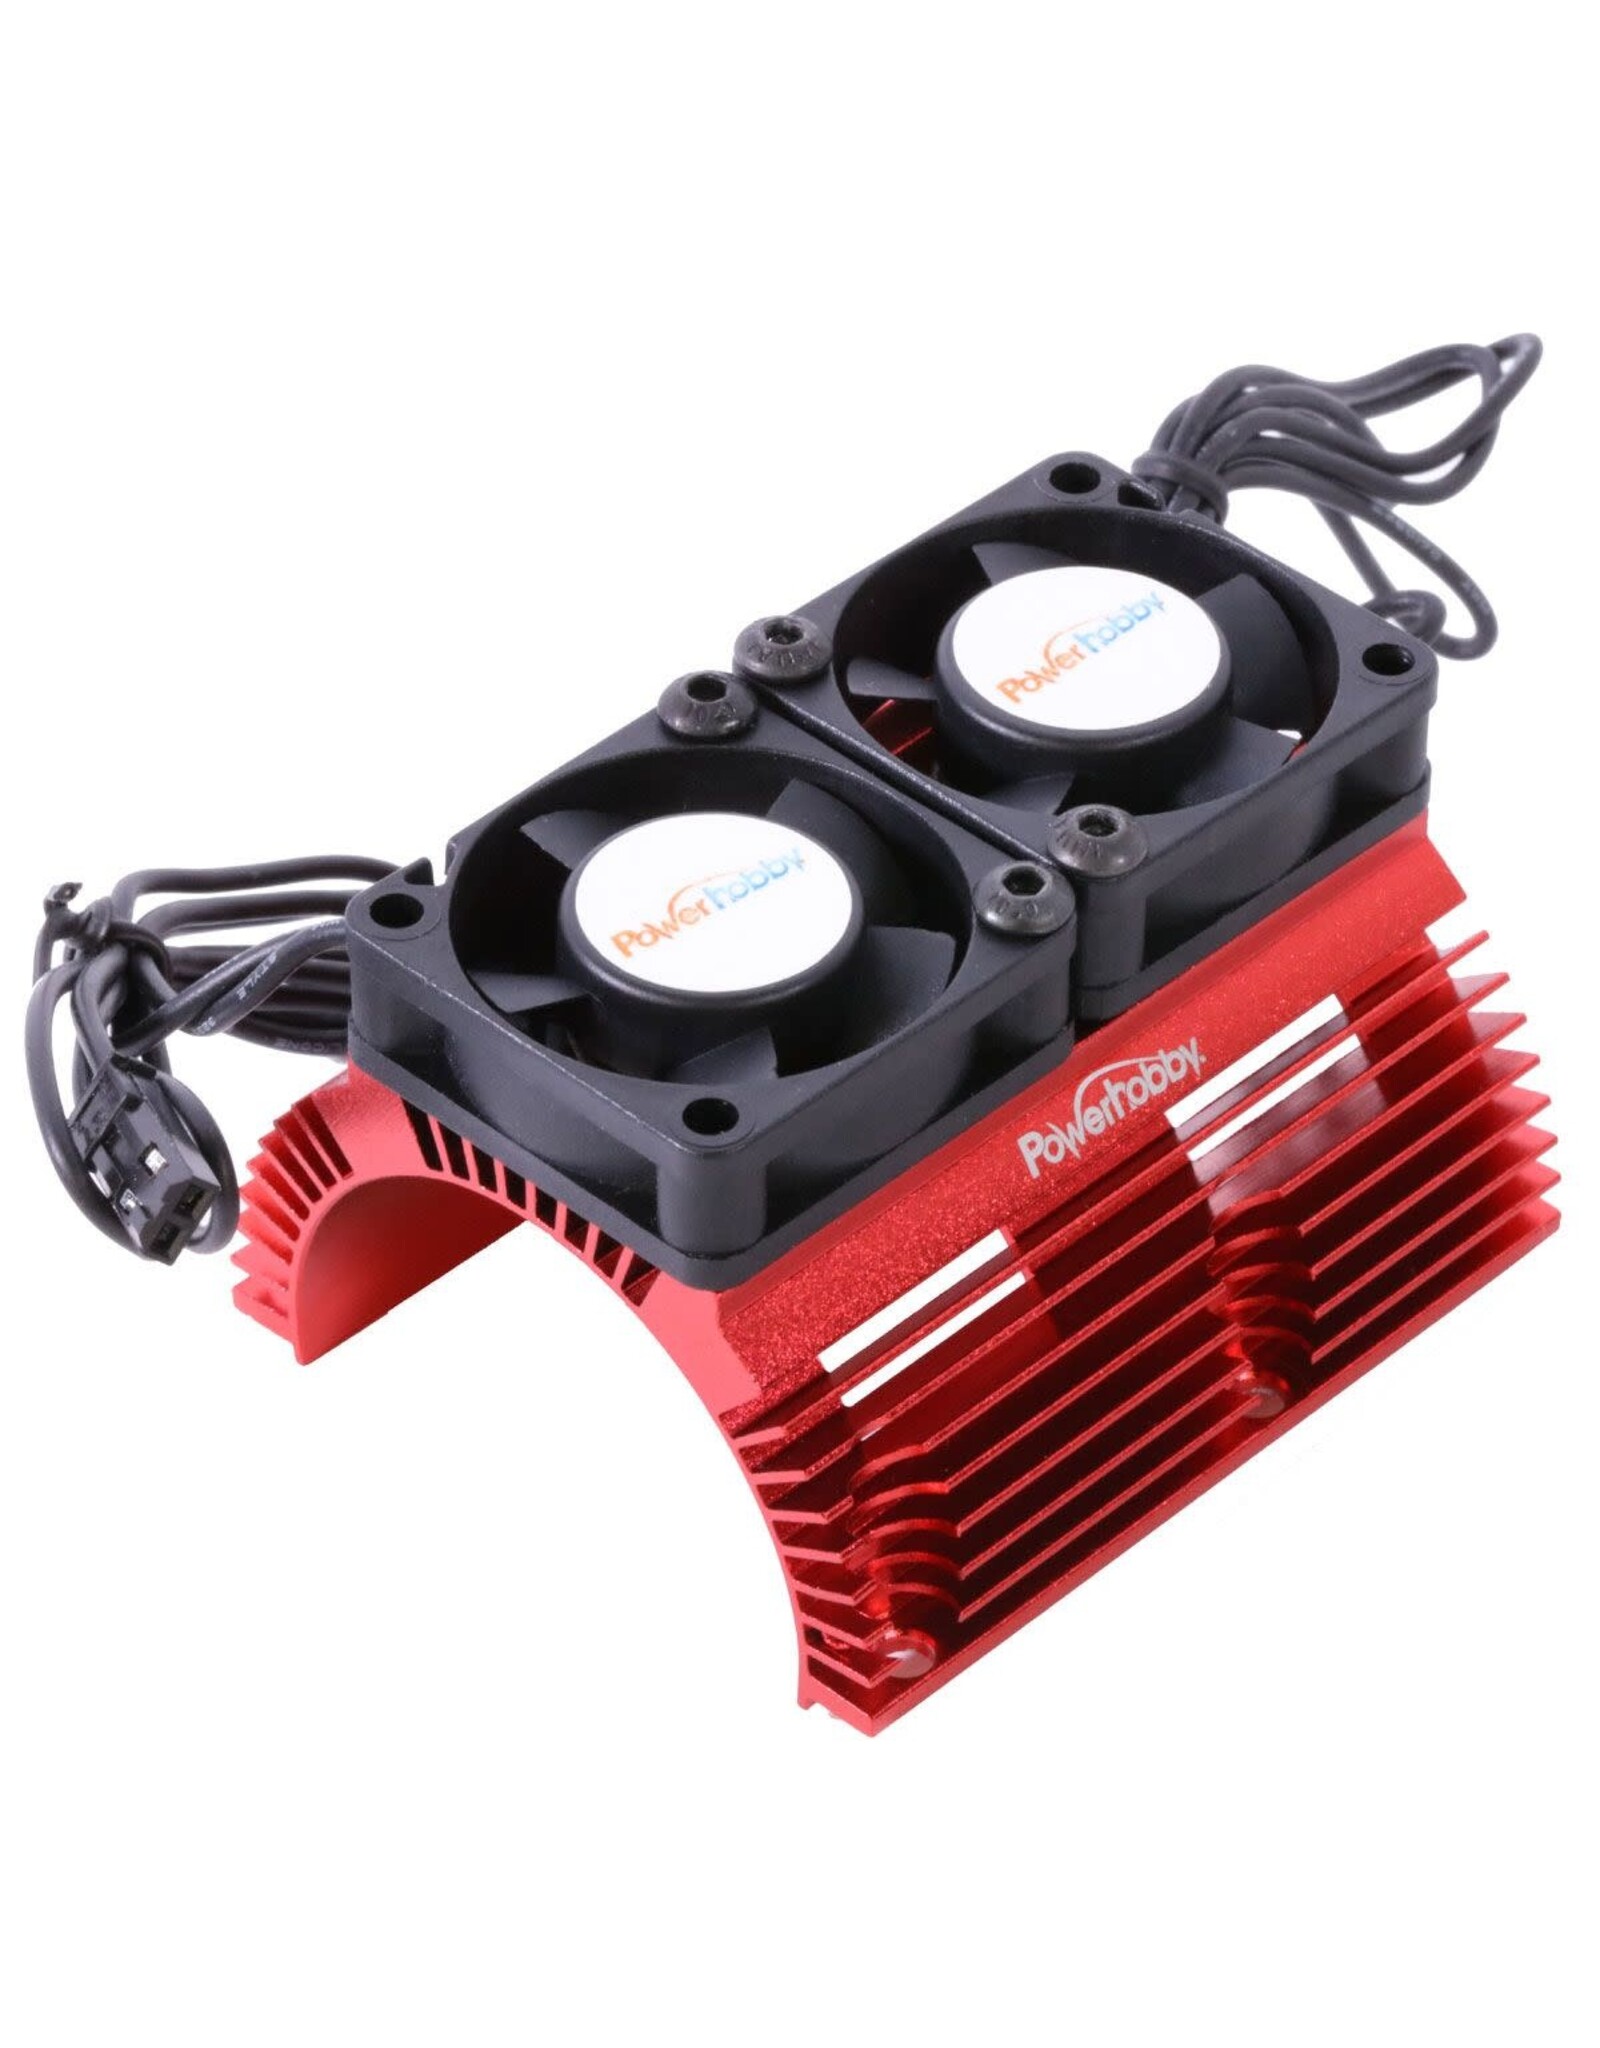 Power Hobby Heat Sink w/ Twin High Speed Fans, 1/8 Motors, Red